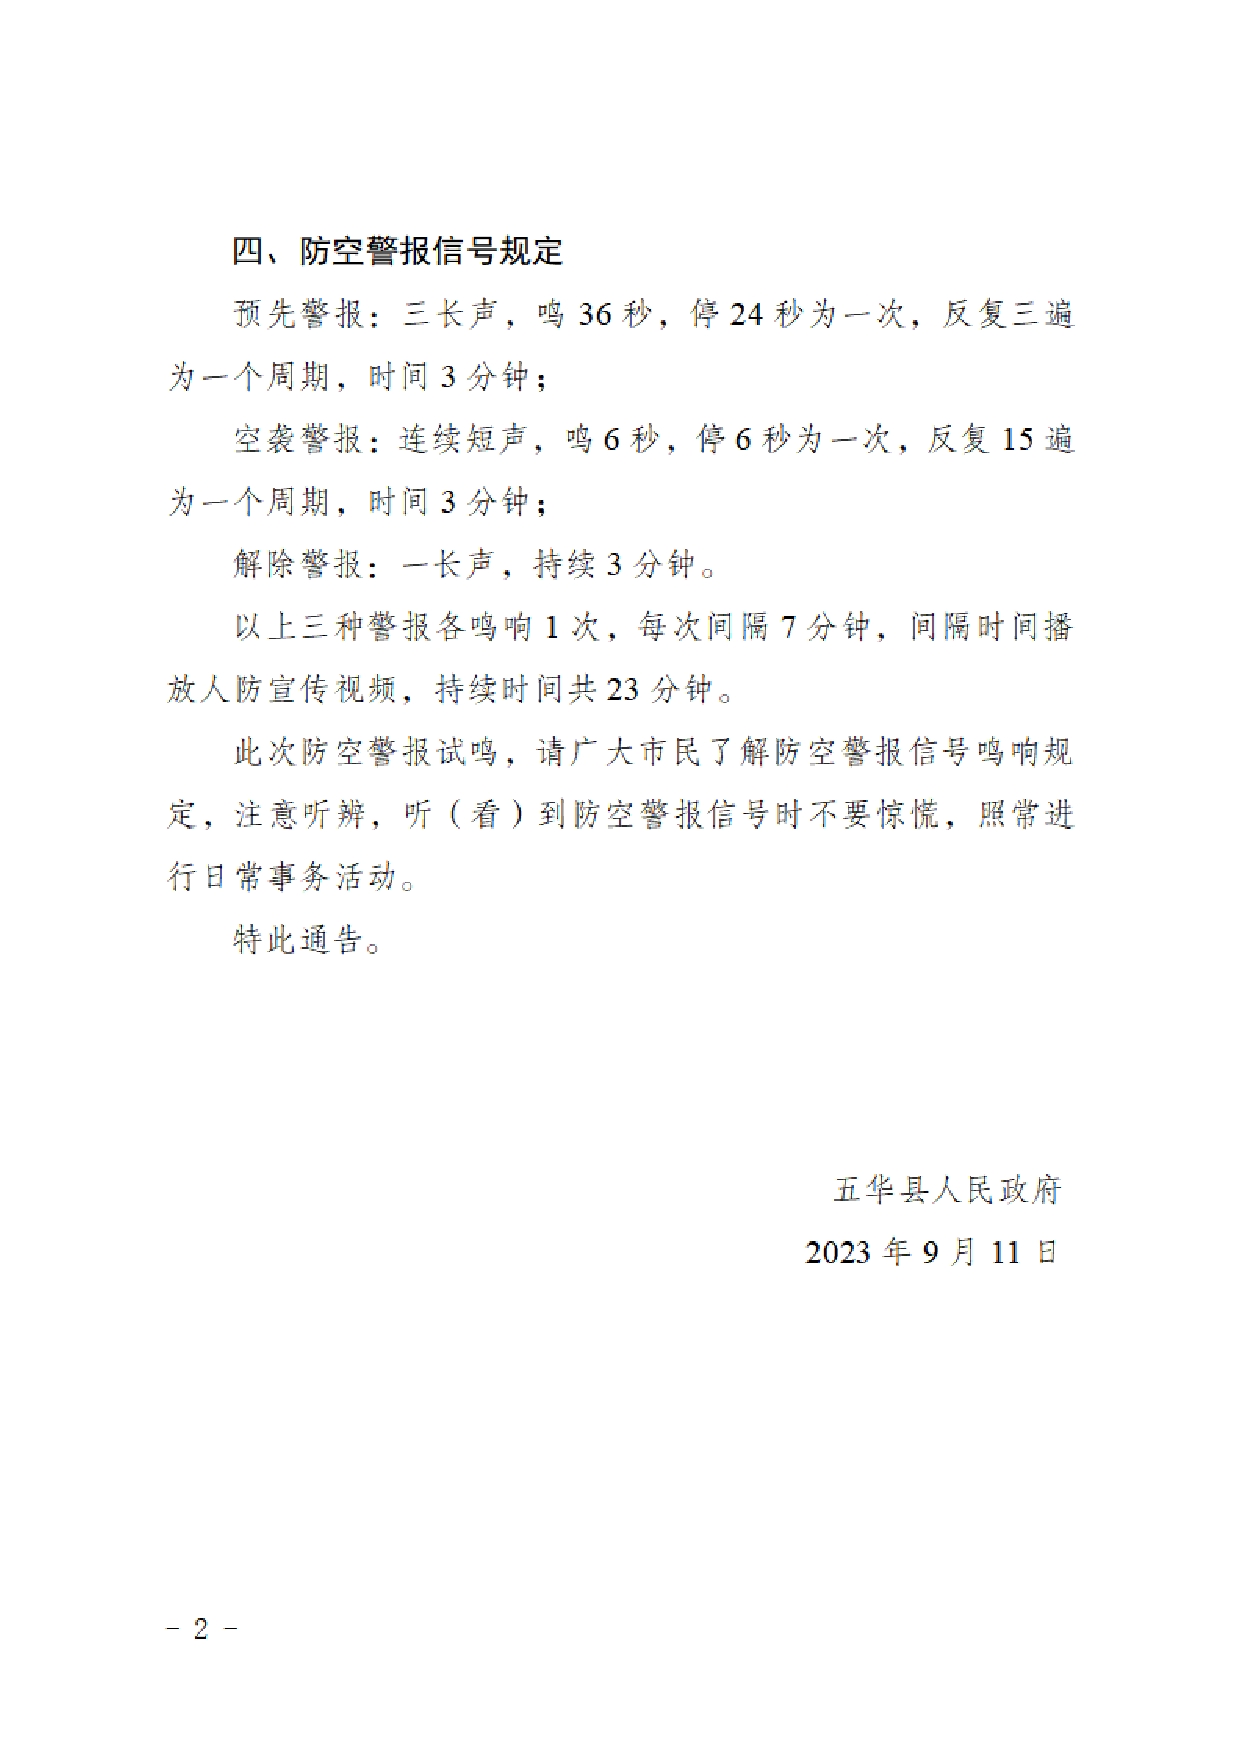 五华县人民政府关于在五华县城试鸣防空警报的通告0001.jpg